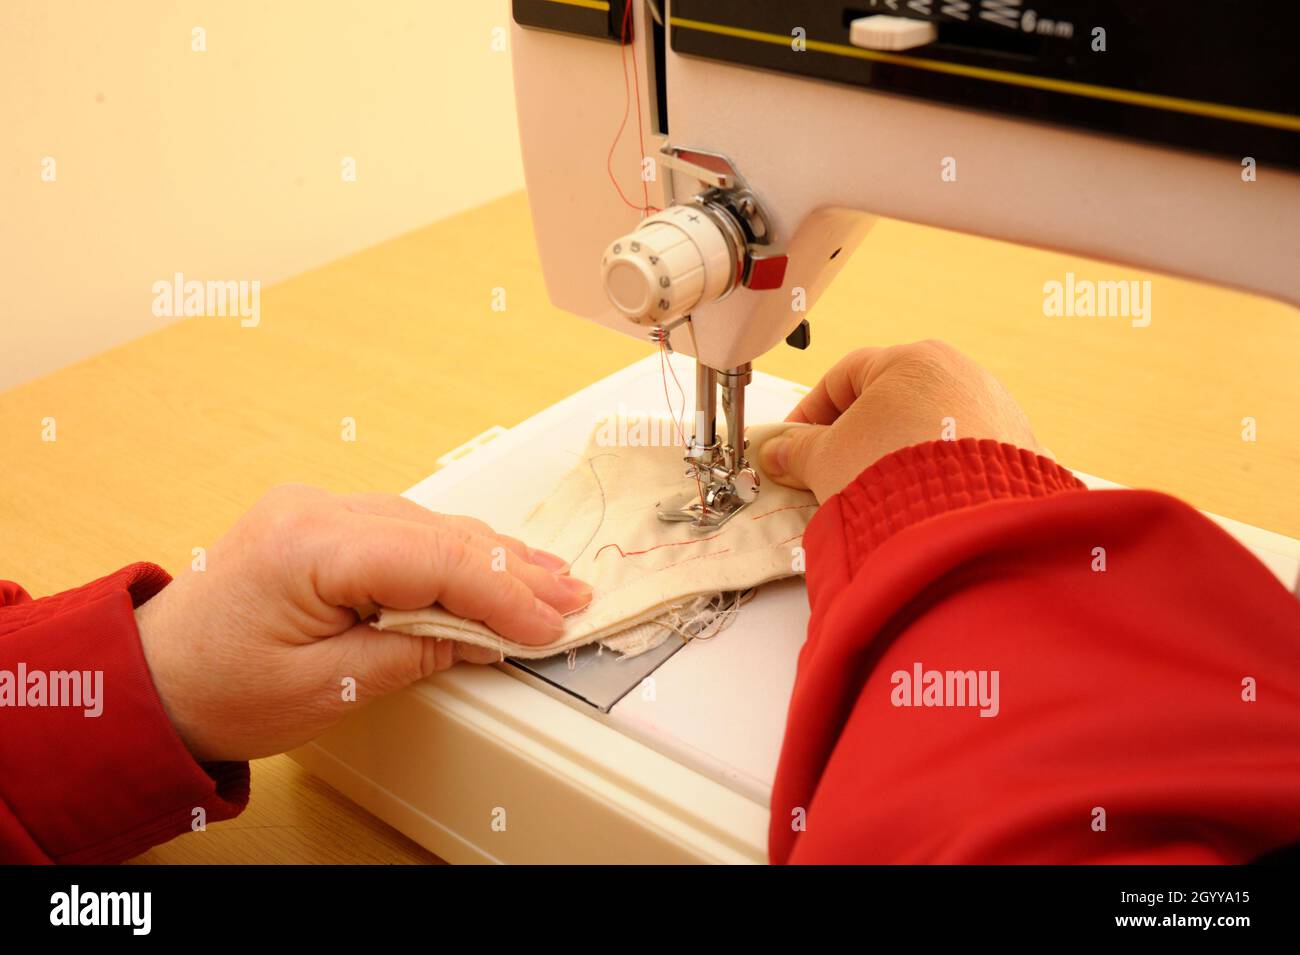 Die Hände der Näherin nähen an einer Nähmaschine. Teile der Nähmaschine  Nadelstange, Pressfuß, Nadel Platte, Futtermittel Hund, Nadel mit einem  Gewinde Stockfotografie - Alamy